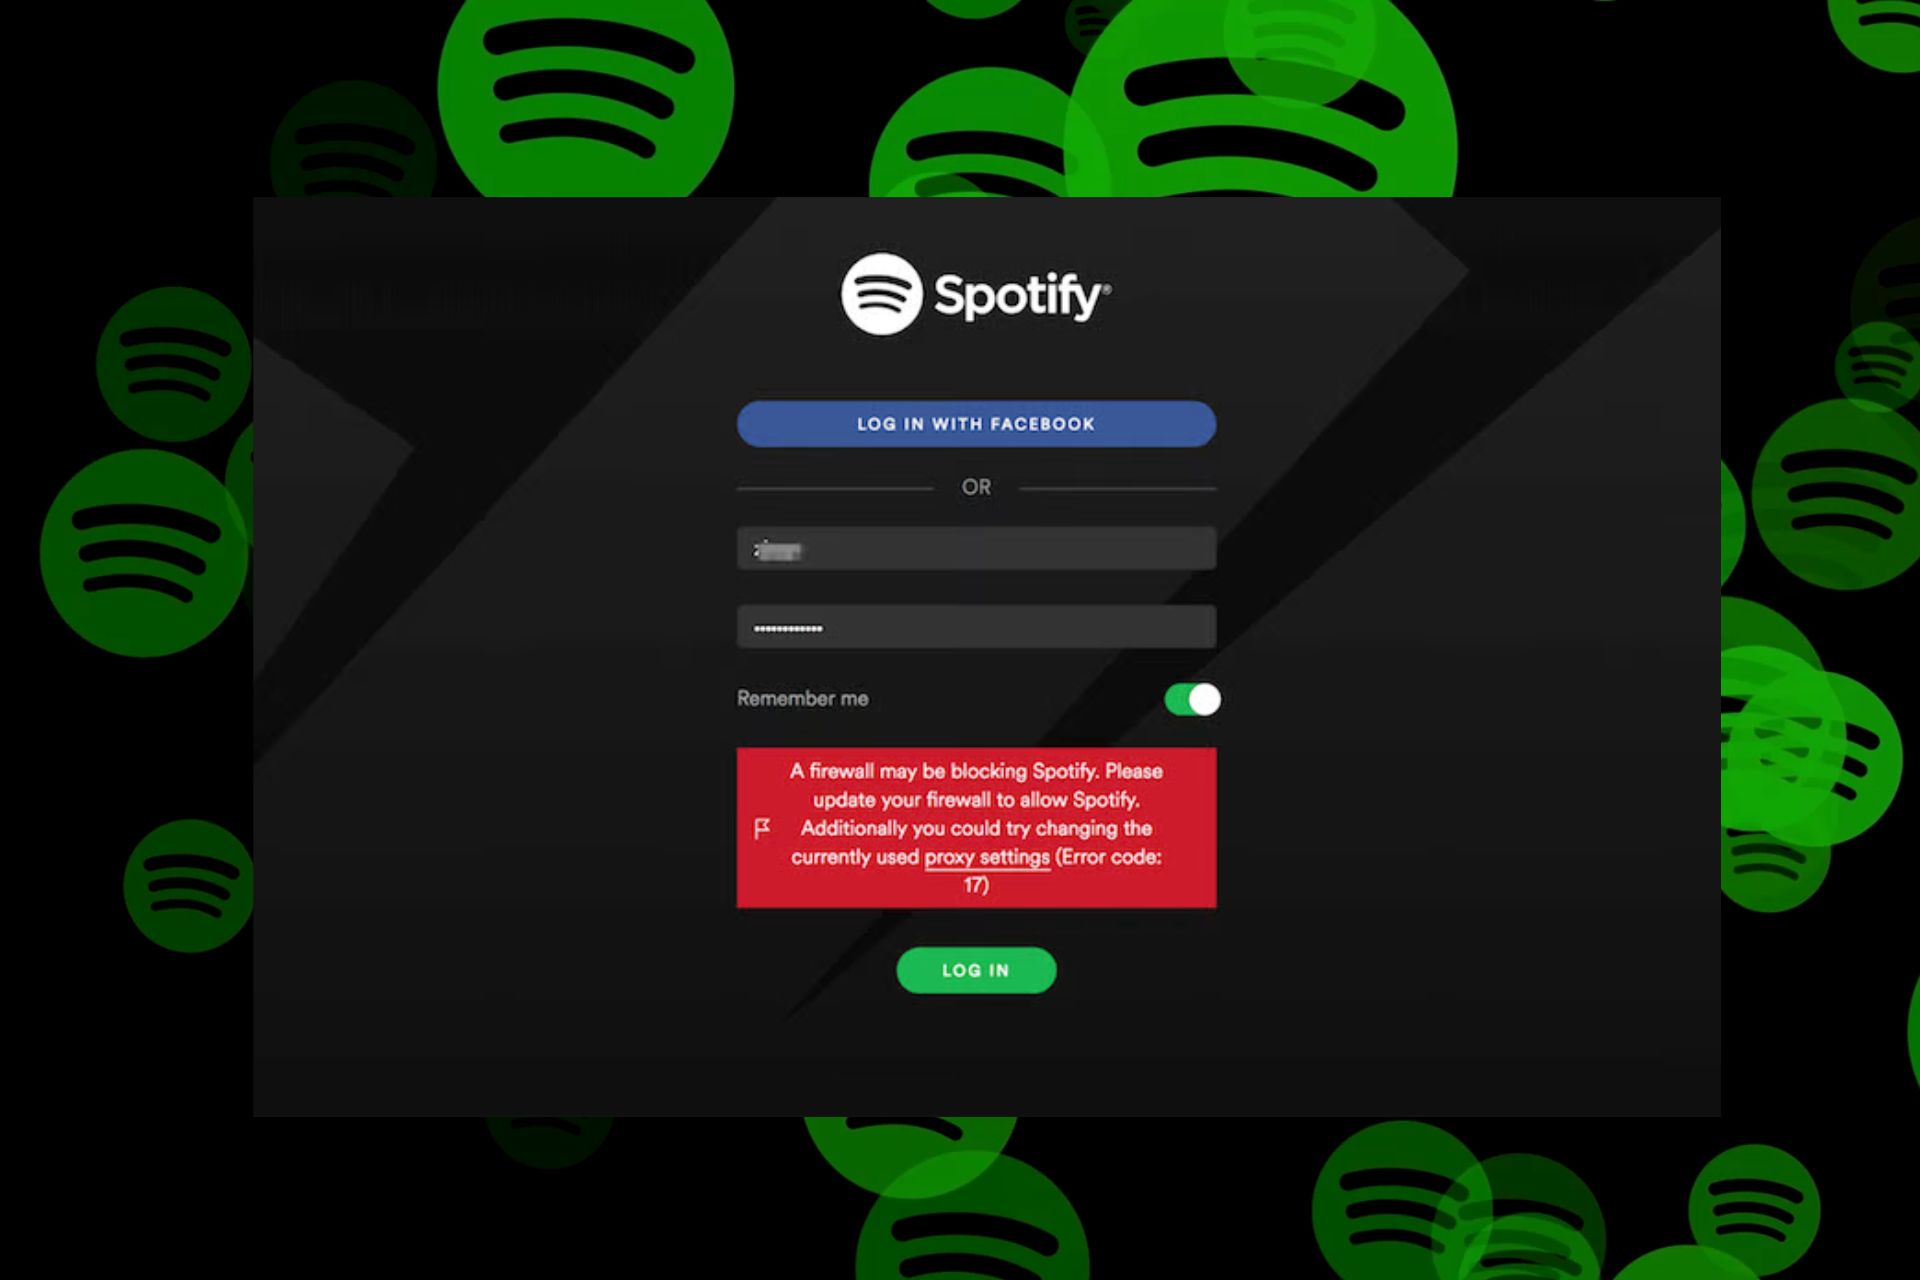 un firewall puede estar bloqueando Spotify